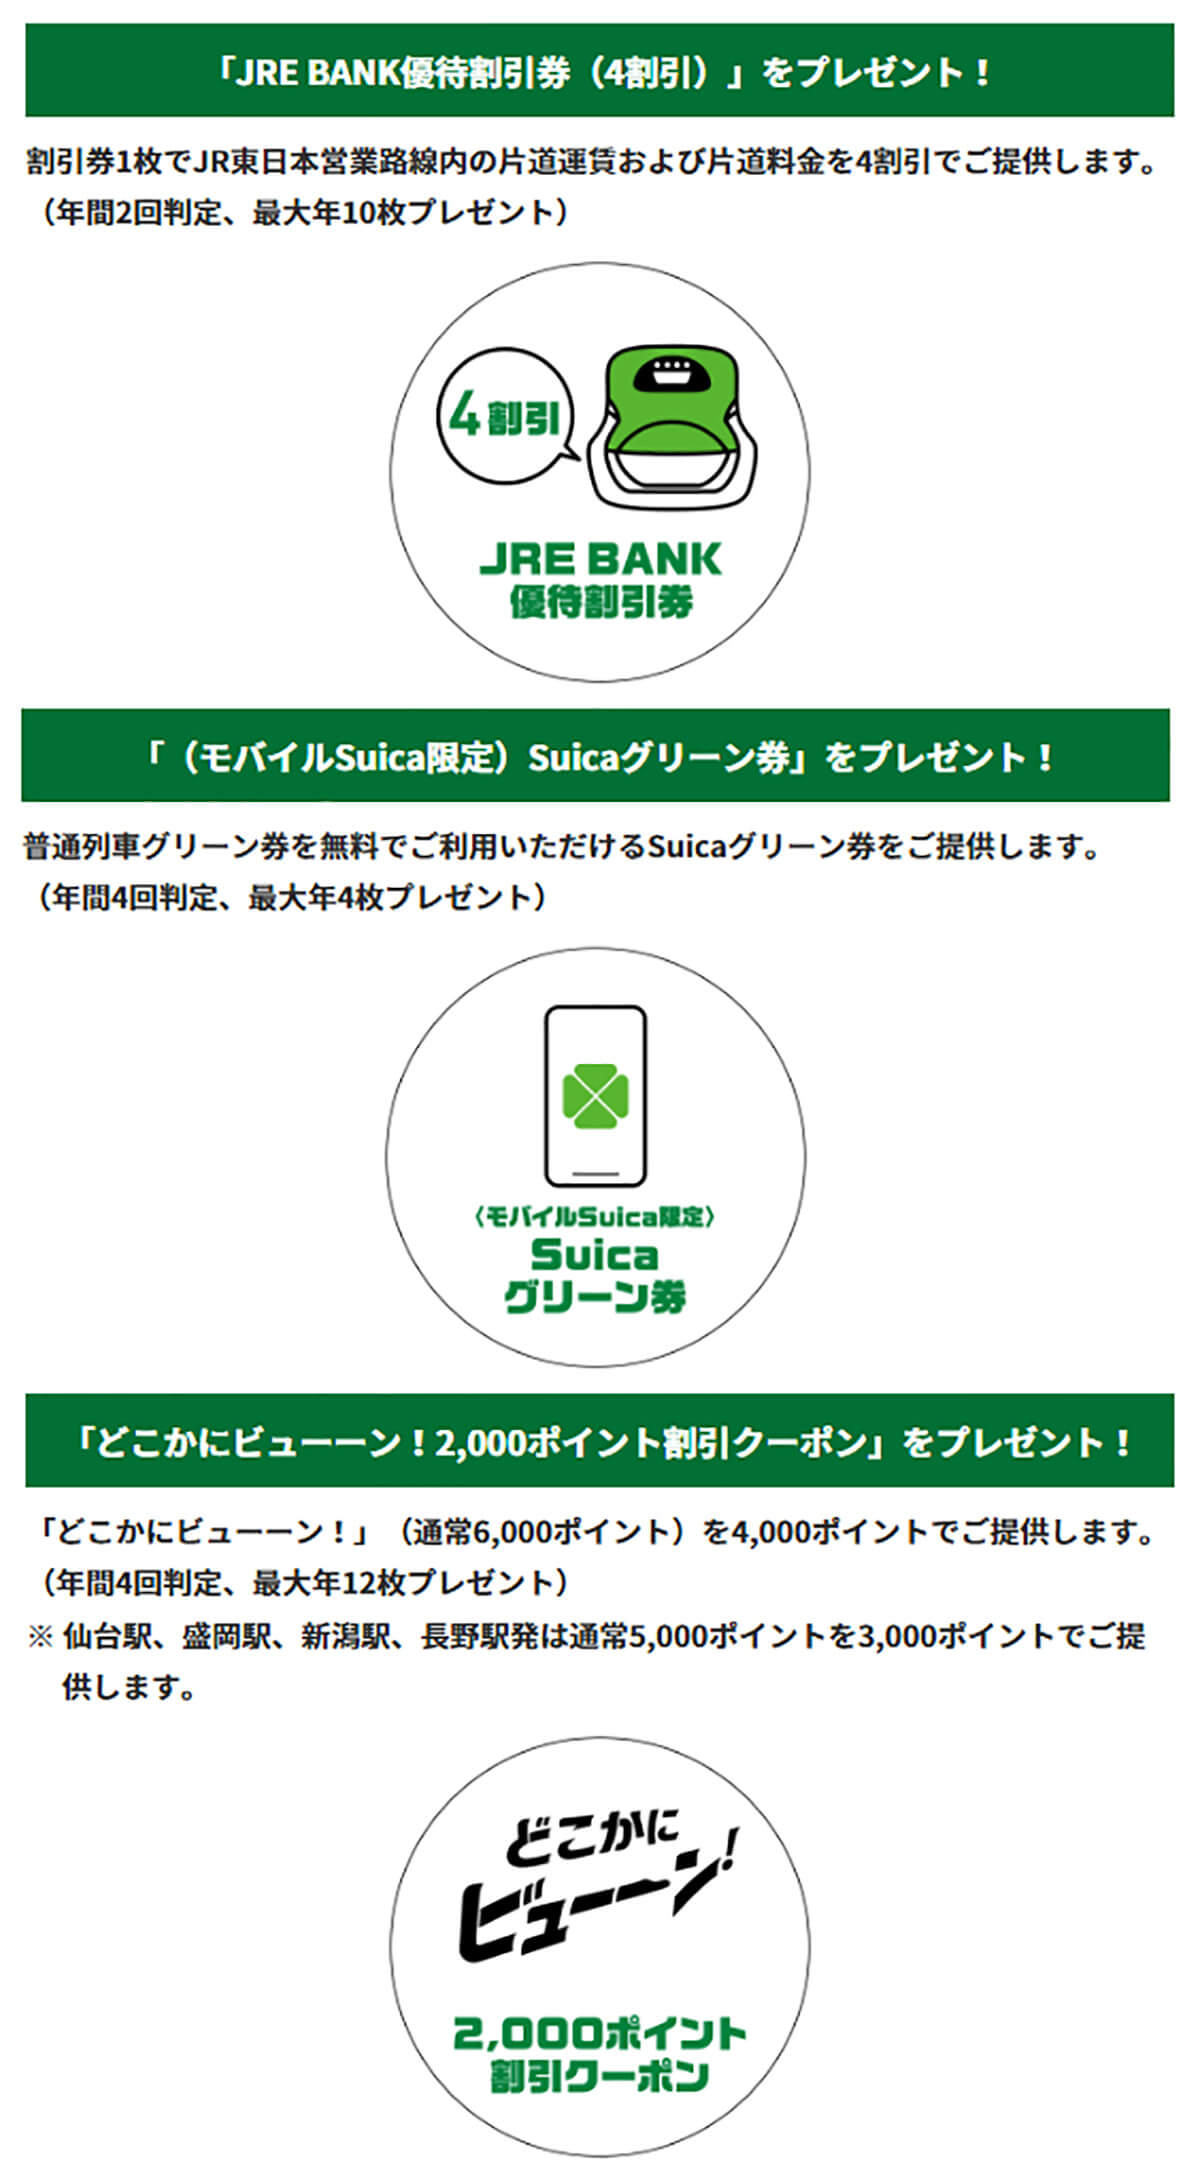 JR東日本の「JRE BANK」口座を実際に開いてみた！− 手順と注意点を解説1